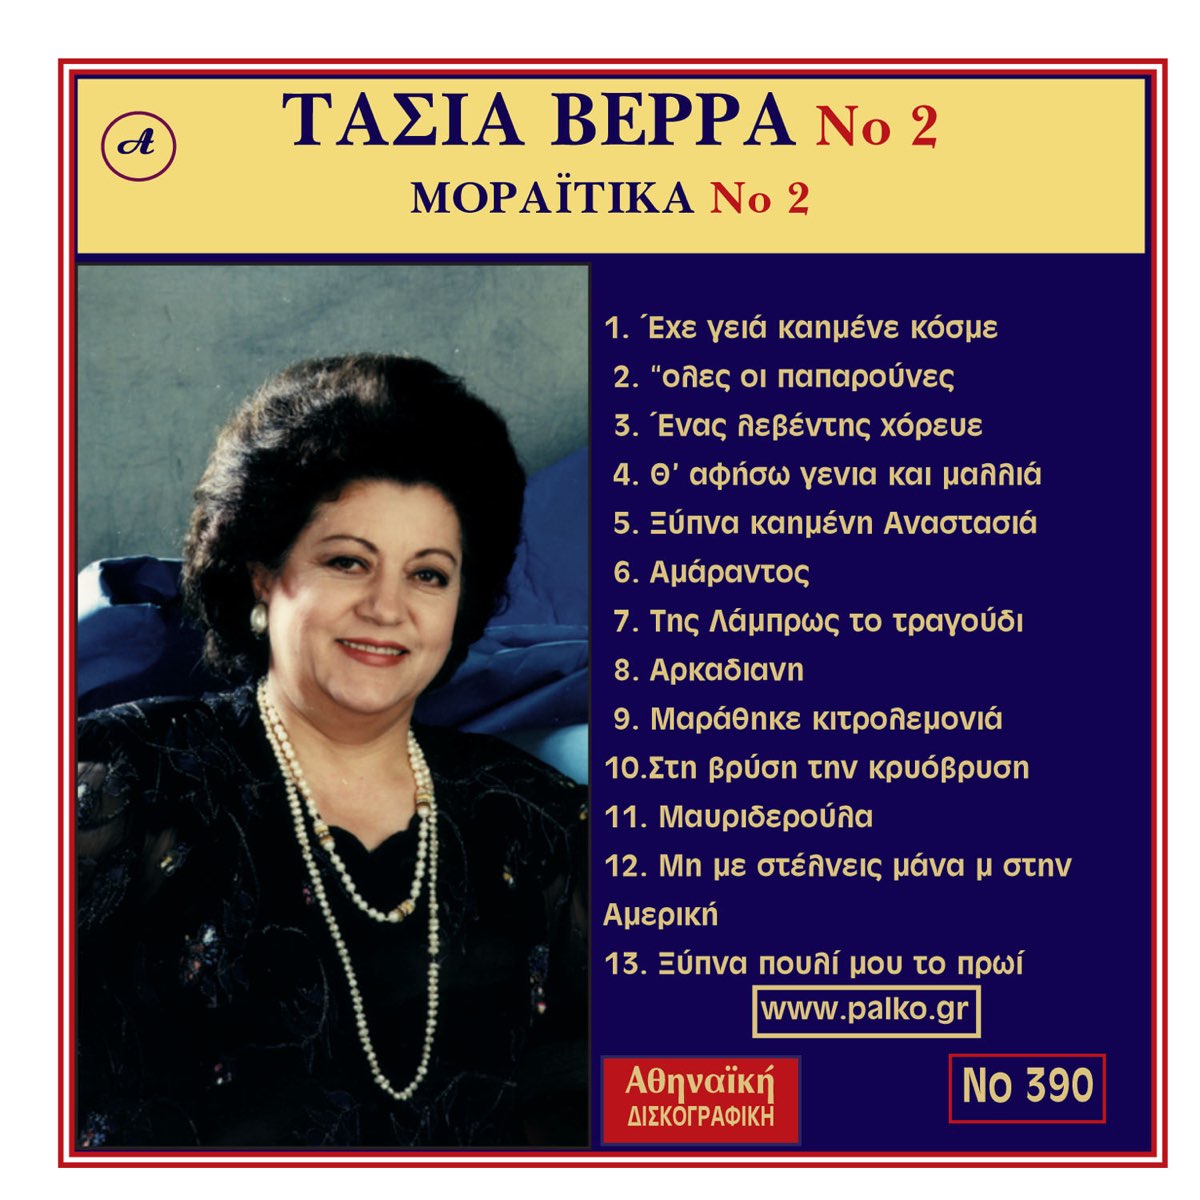 Tasia Verra, Ta Moraitika No. 2 - Album by Tasia Verra - Apple Music